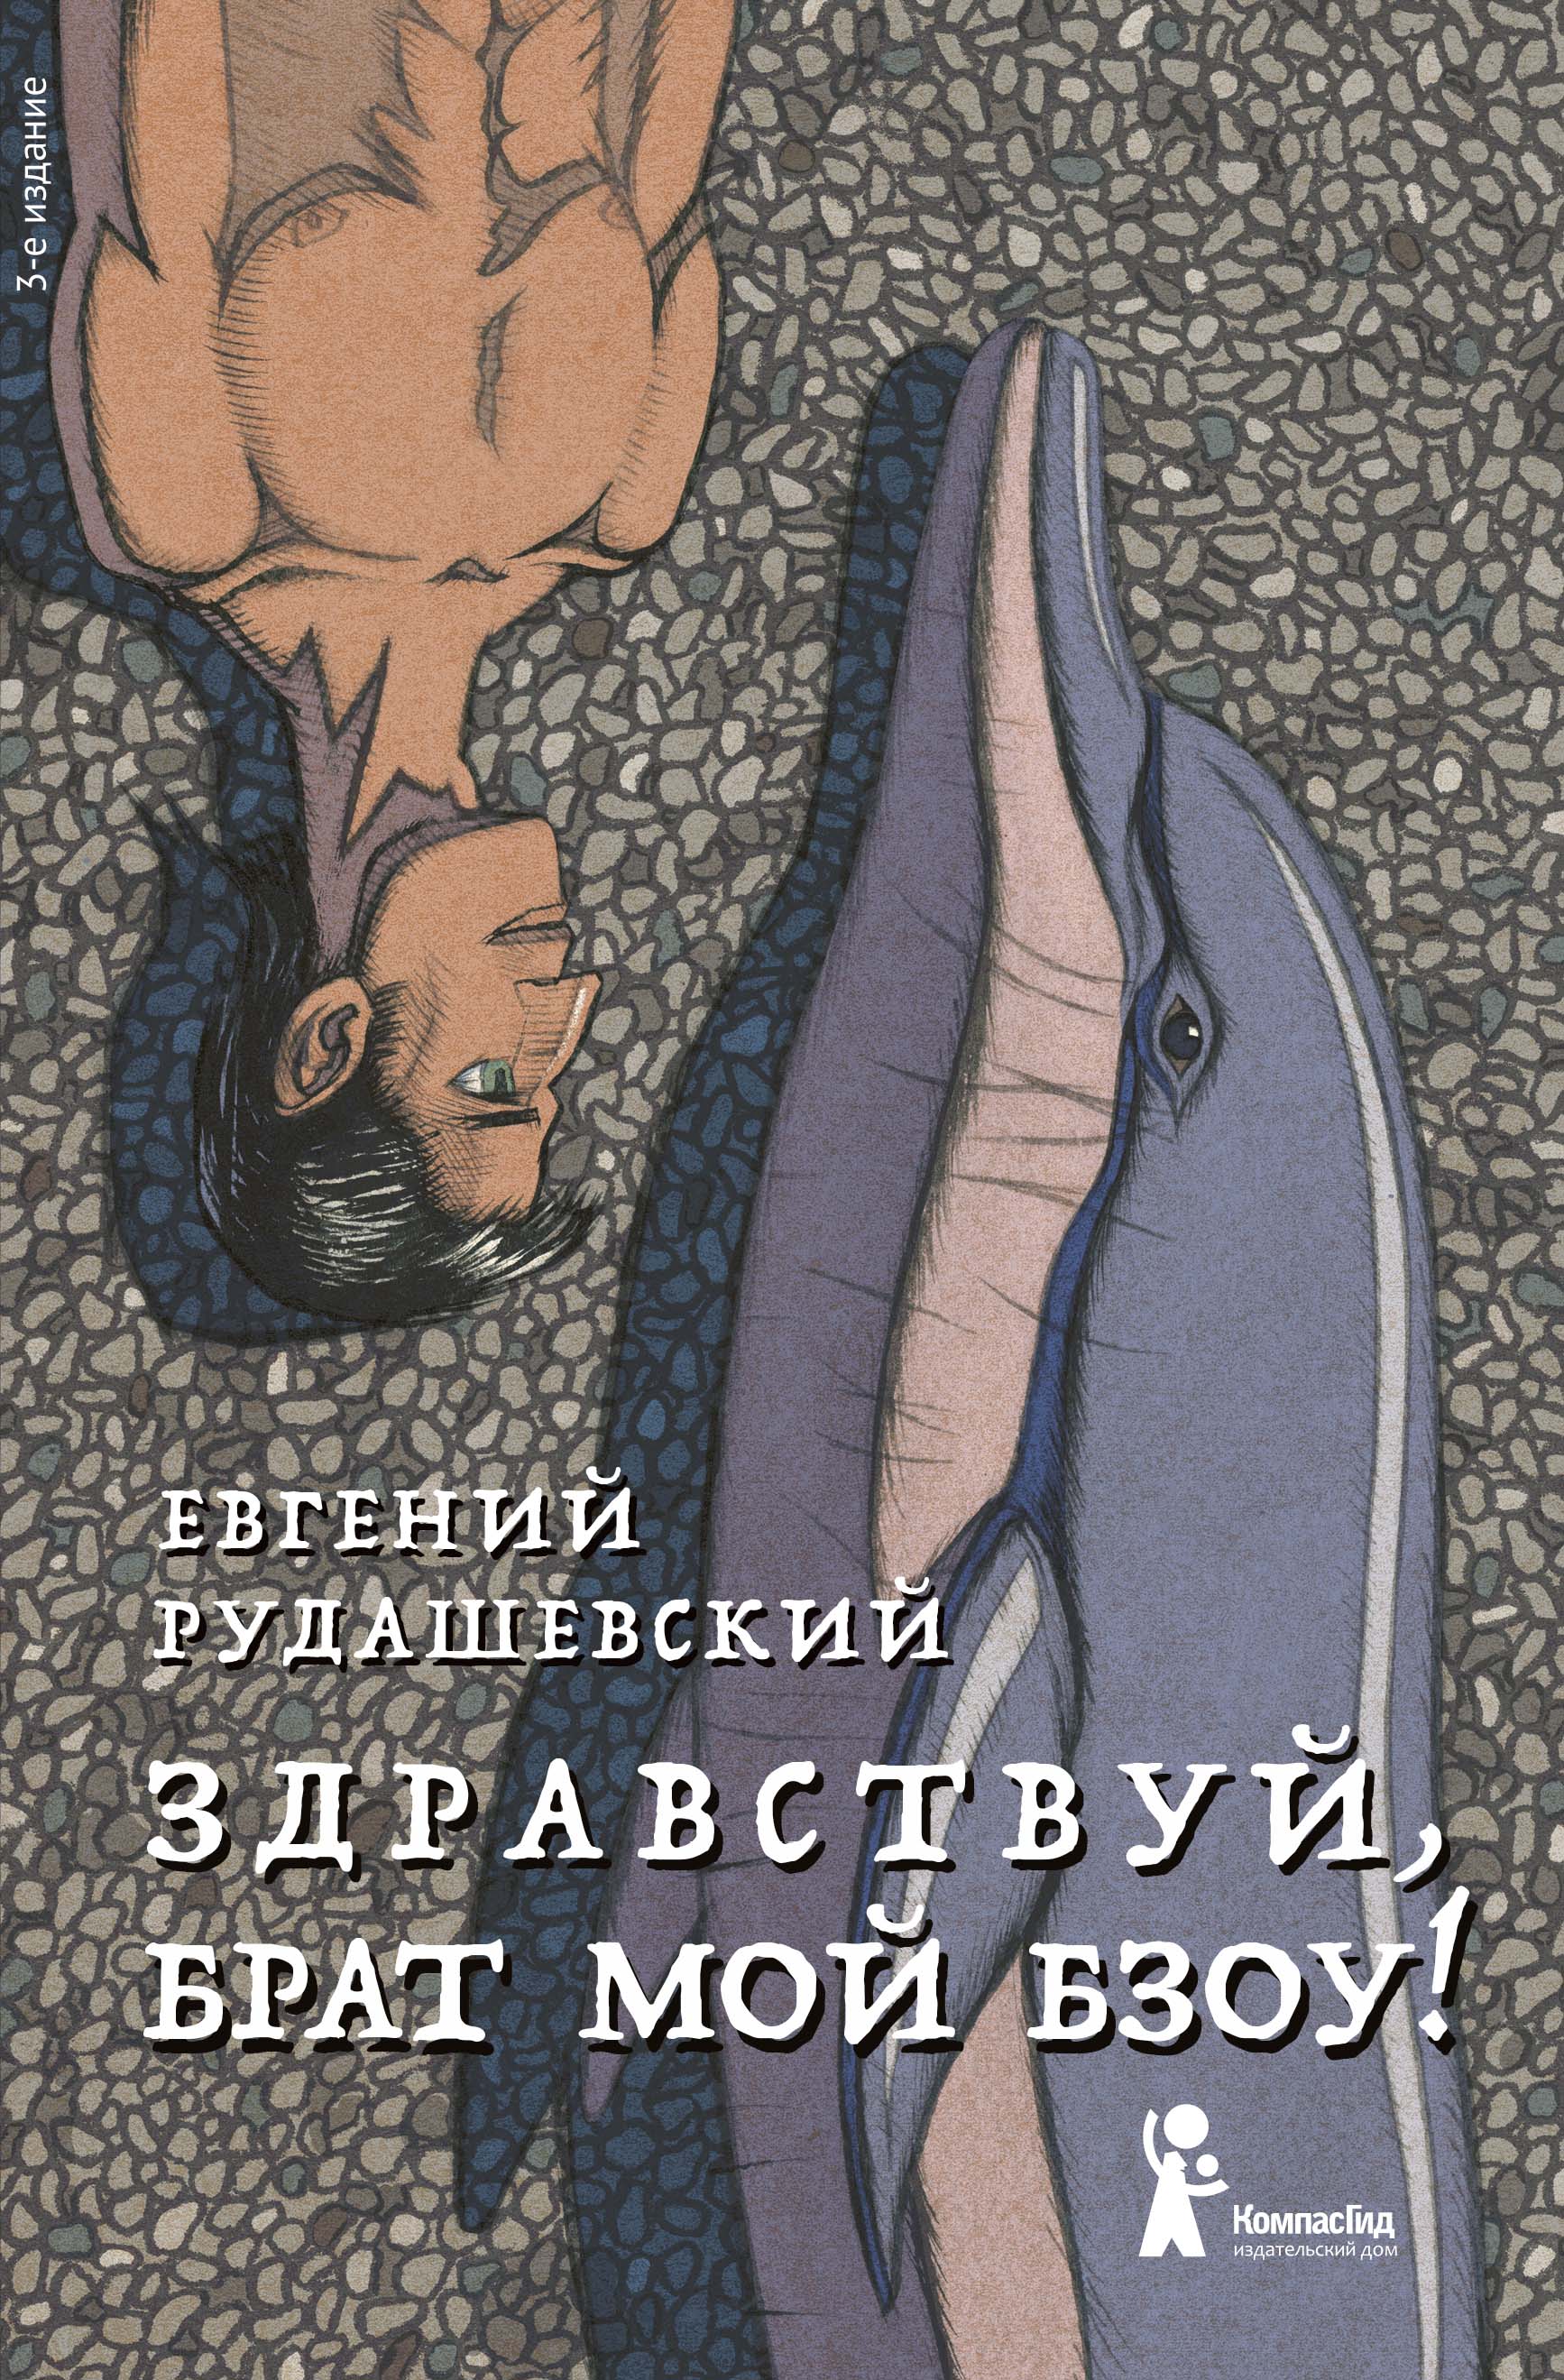 Рудашевский Евгений - Здравствуй, брат мой Бзоу! (3-е изд. )